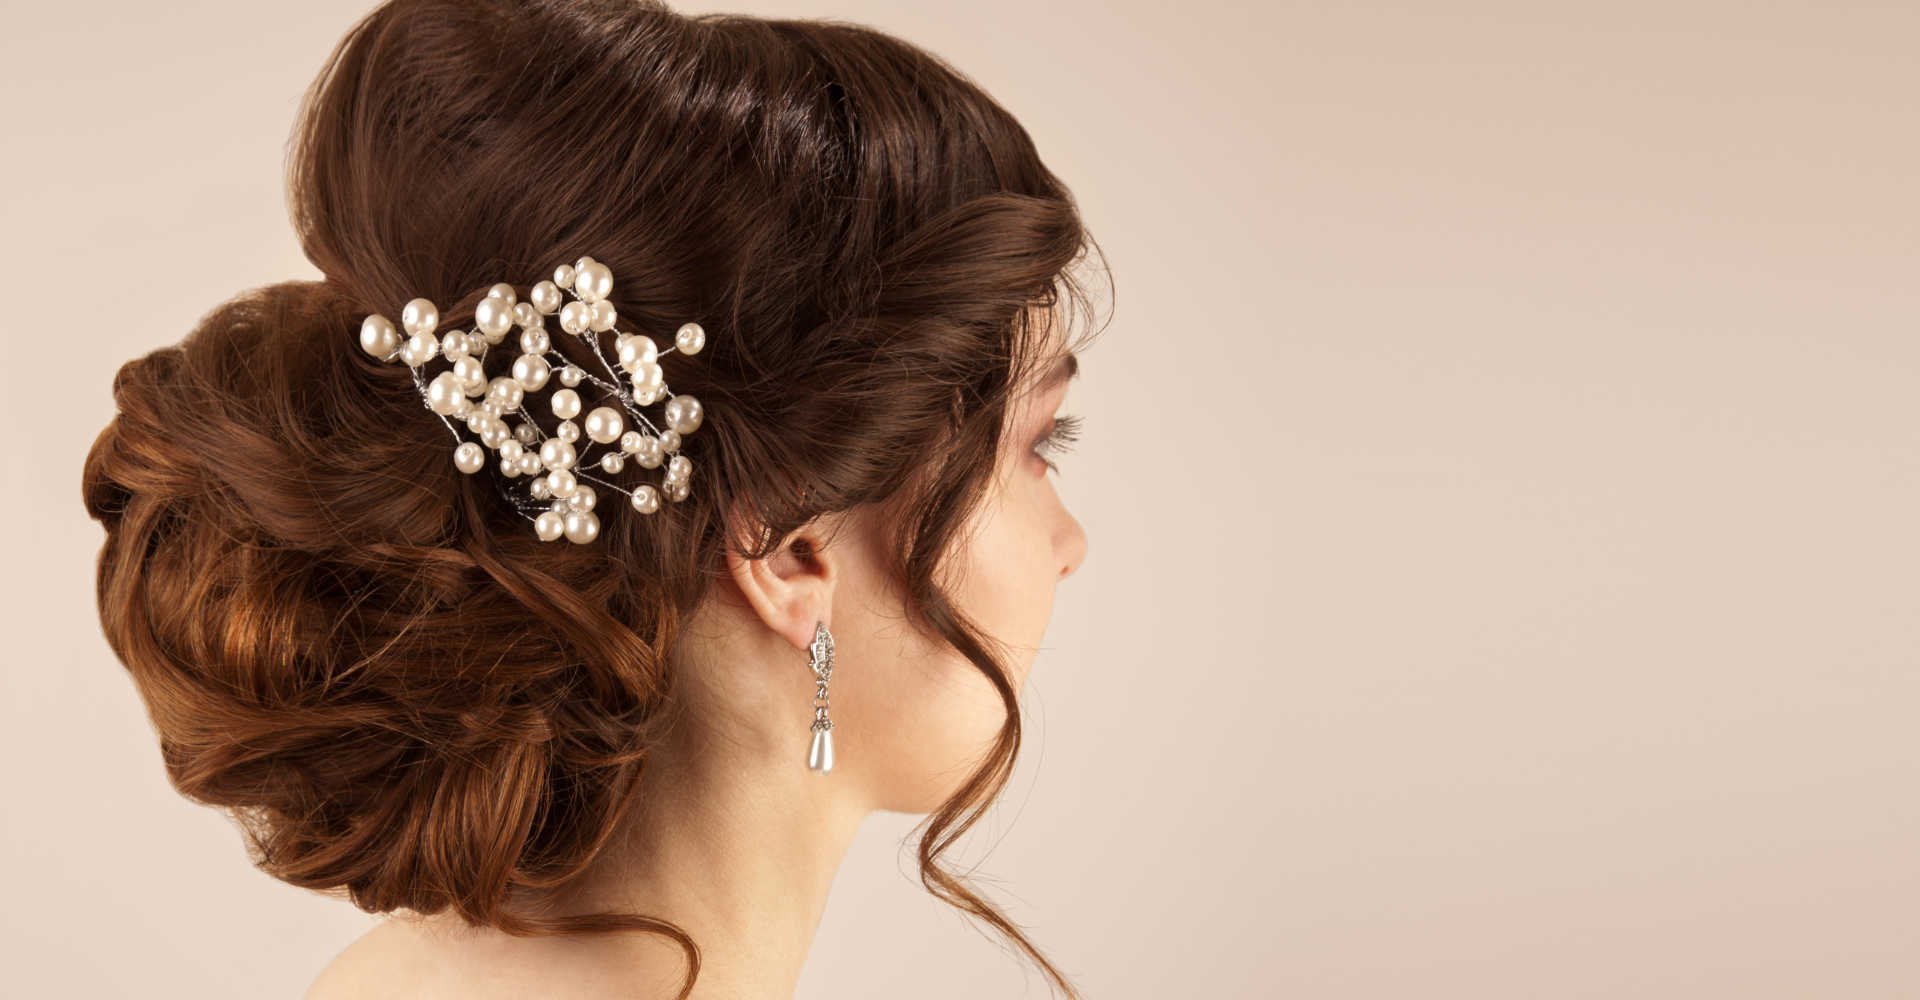 Coque baixo ou alto? Descubra qual o melhor penteado para uma noiva usar  com véu | L'Oréal Paris